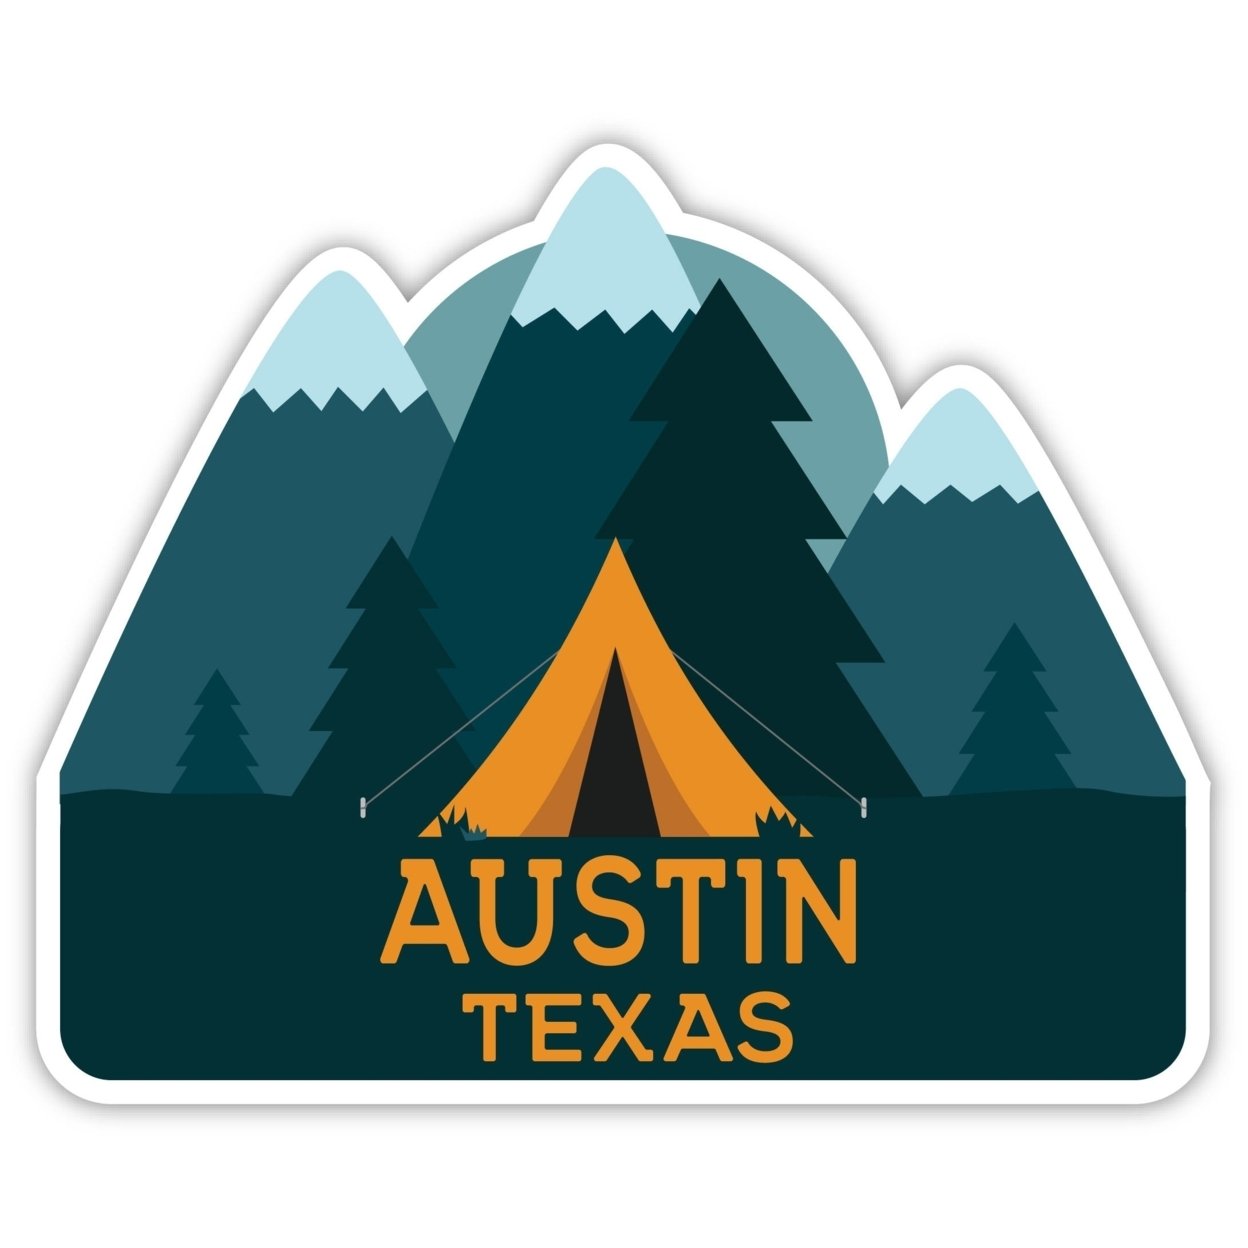 Austin Texas Souvenir Decorative Stickers (Choose Theme And Size) - Single Unit, 2-Inch, Tent